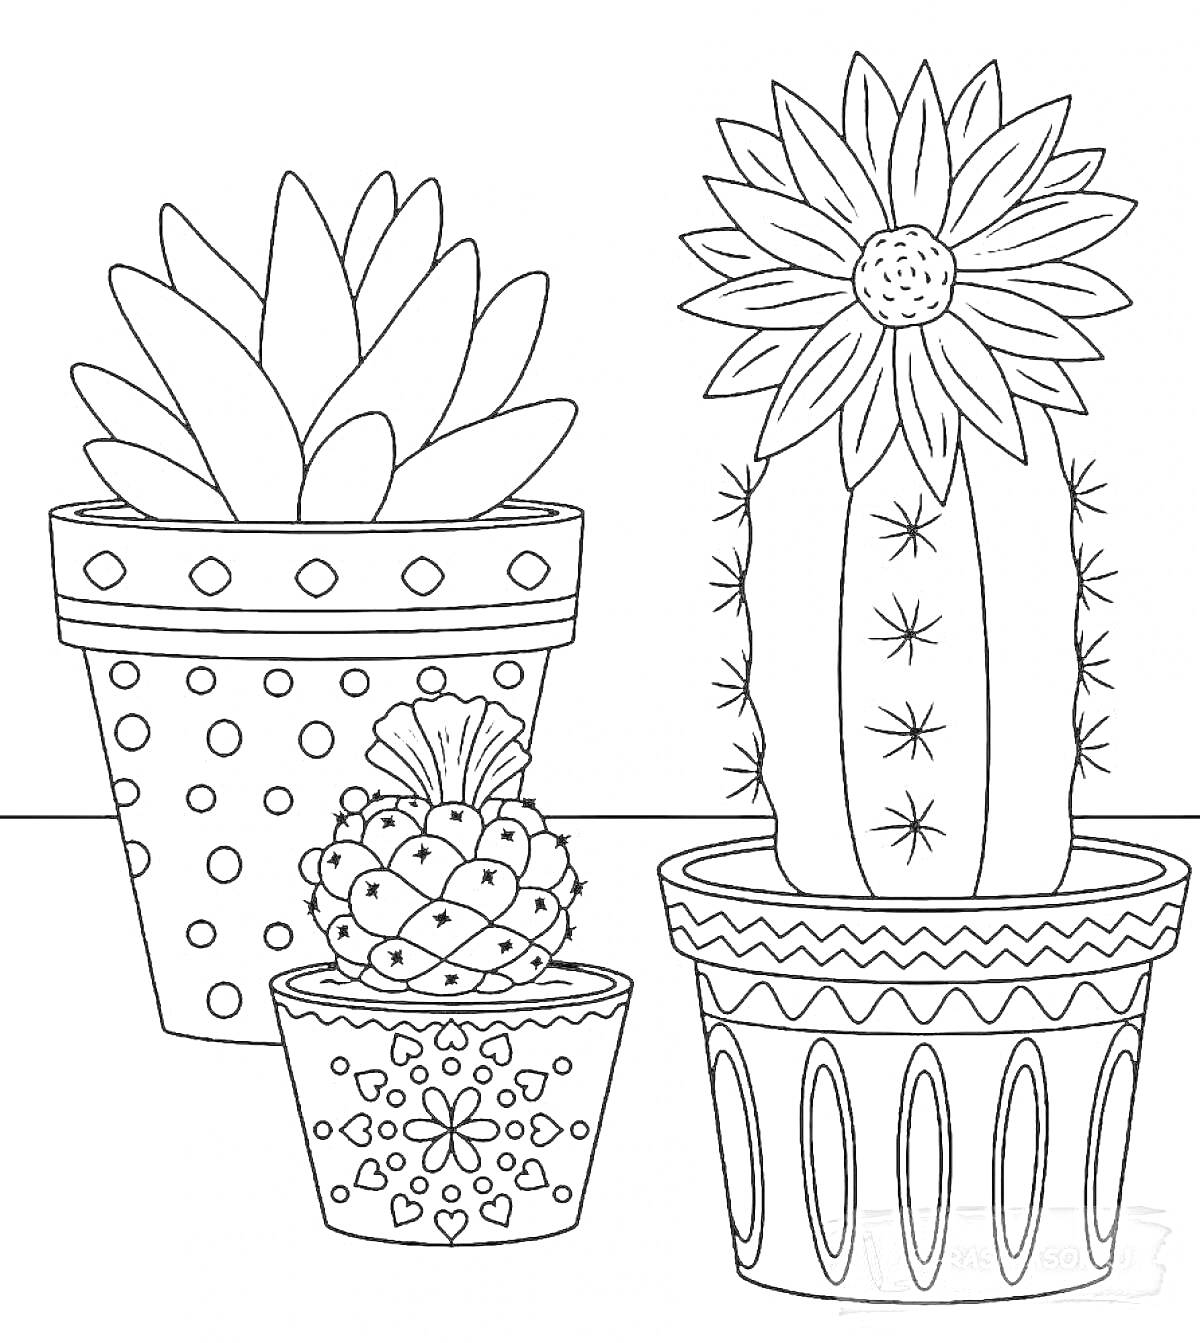 Раскраска Красивая раскраска с комнатными растениями - три горшка с суккулентом, кактусом с цветком и еще одним узорчатым кактусом